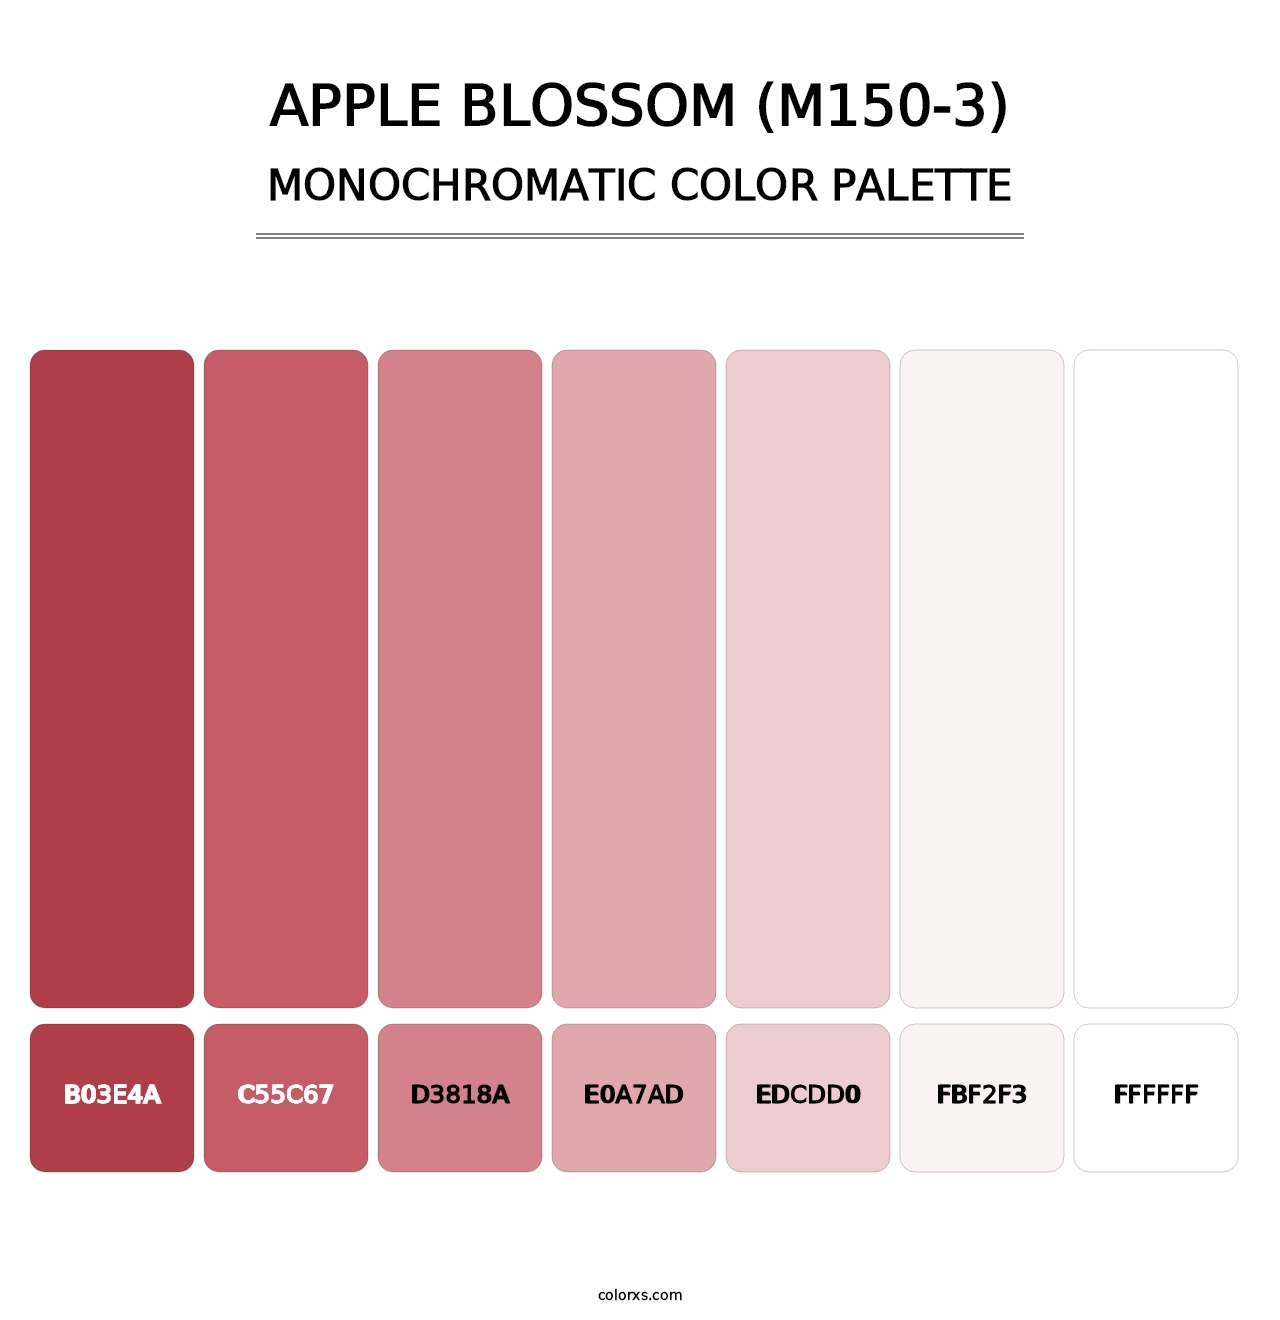 Apple Blossom (M150-3) - Monochromatic Color Palette